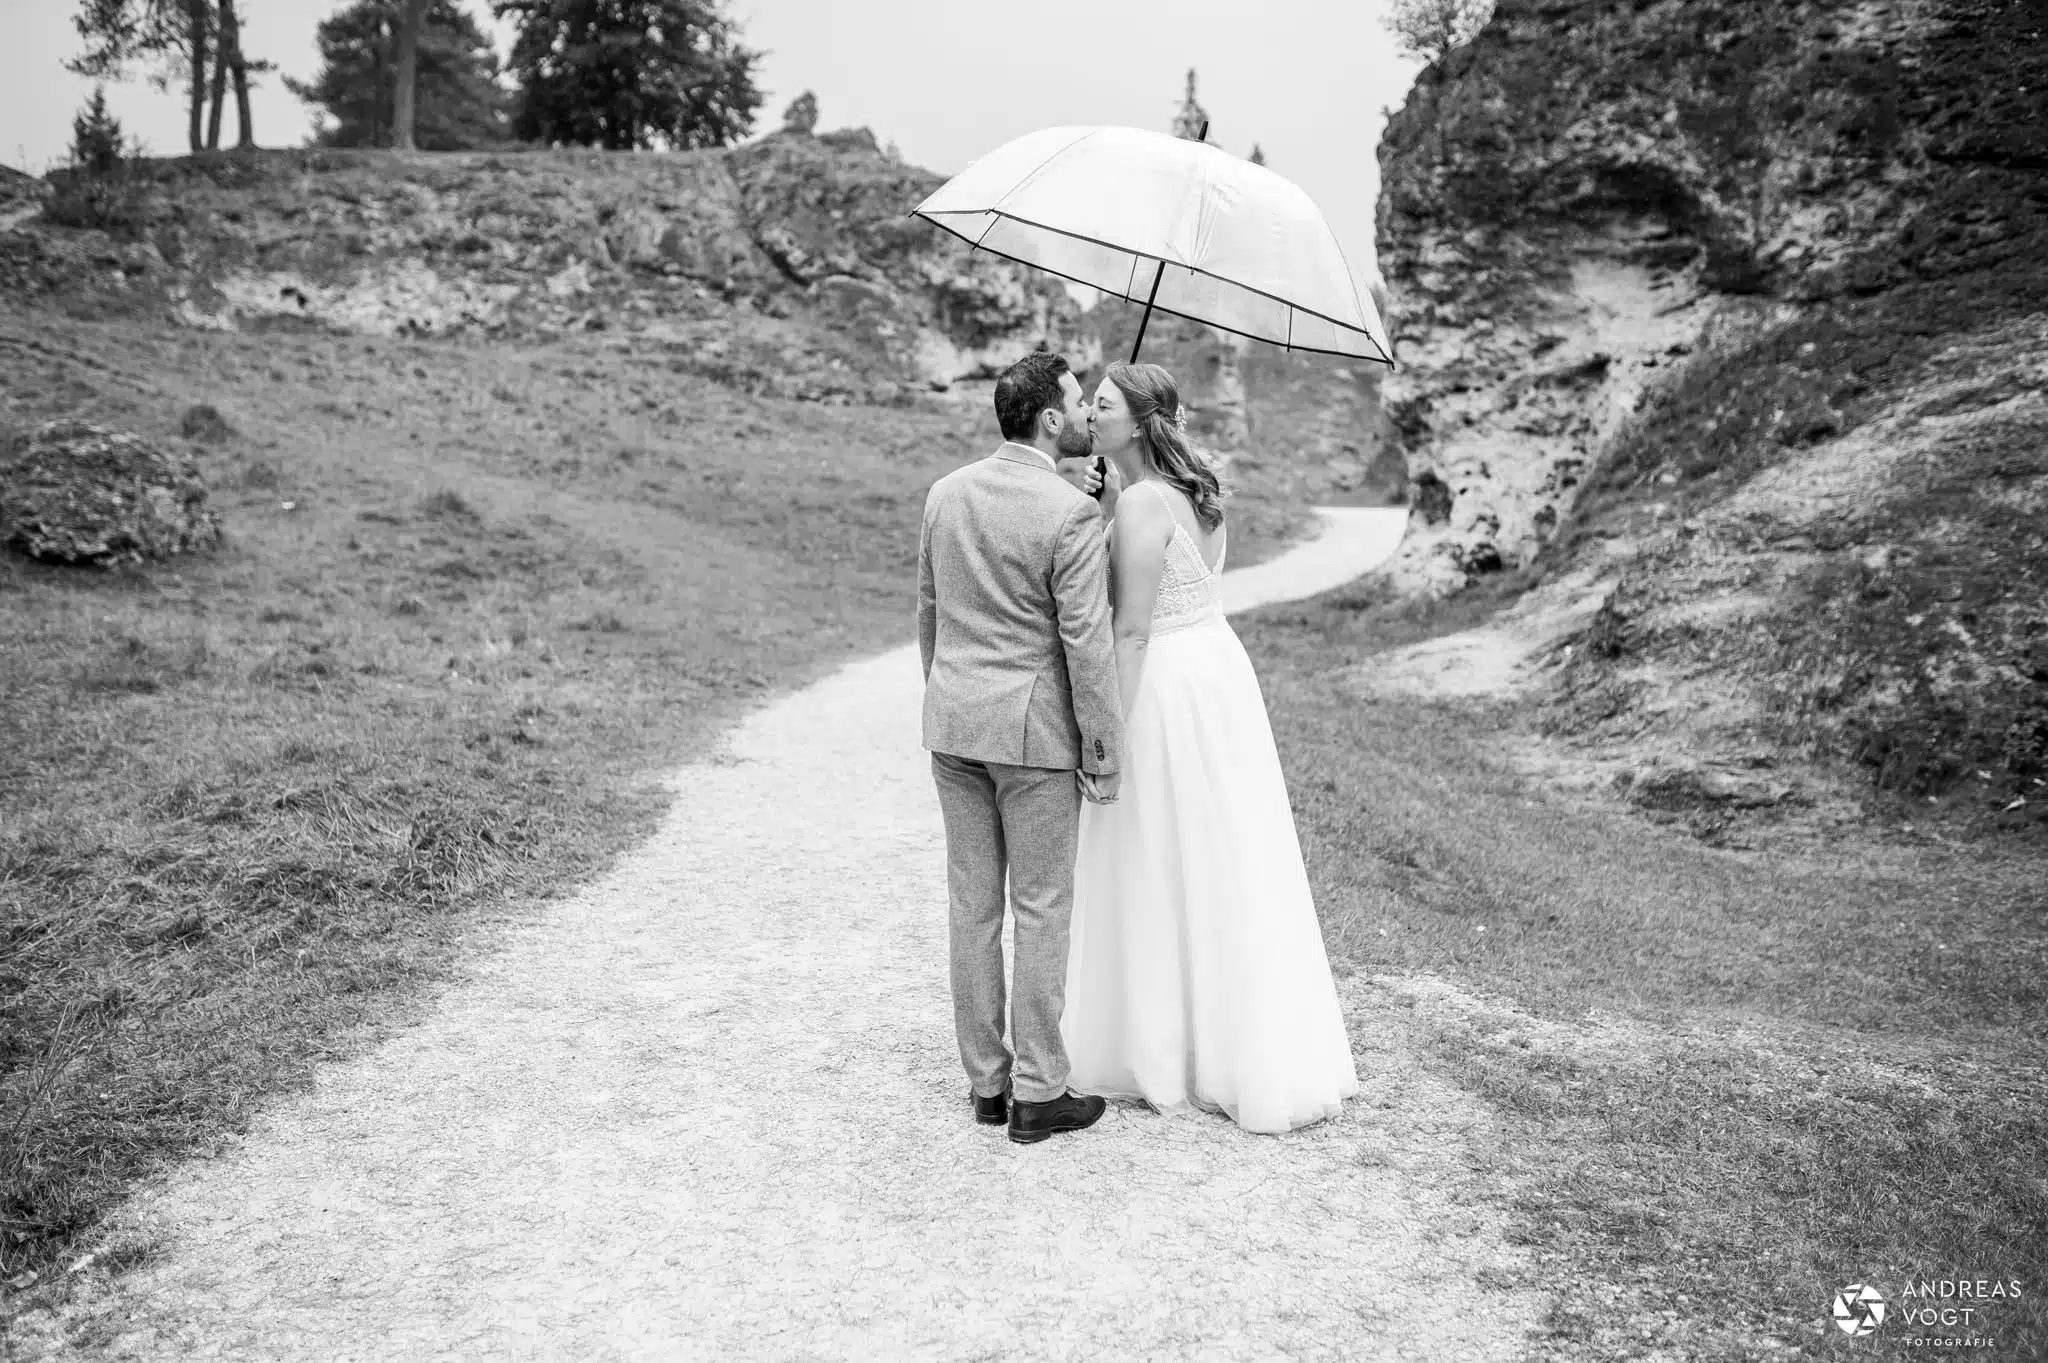 Schwarz-weiß Foto einer Hochzeit bei Regen - Andreas Vogt